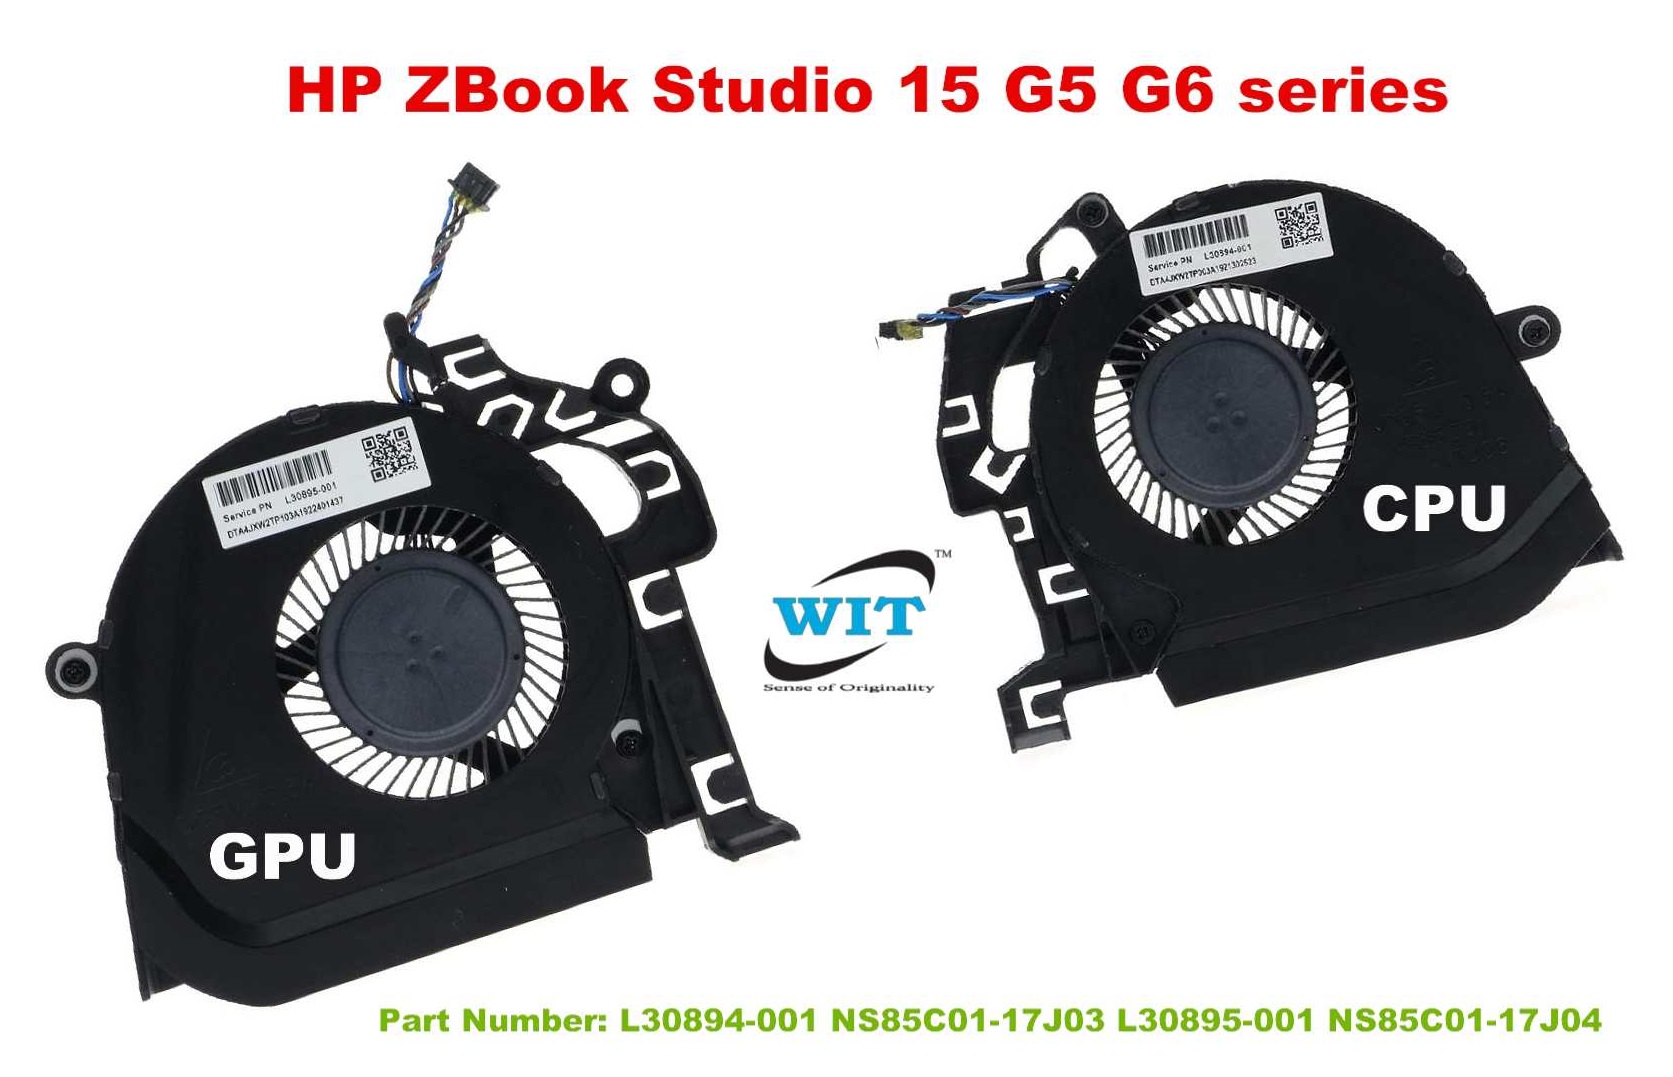 Laptop CPU+GPU internal cooling fan for HP Studio ZBook 15 G5, HP